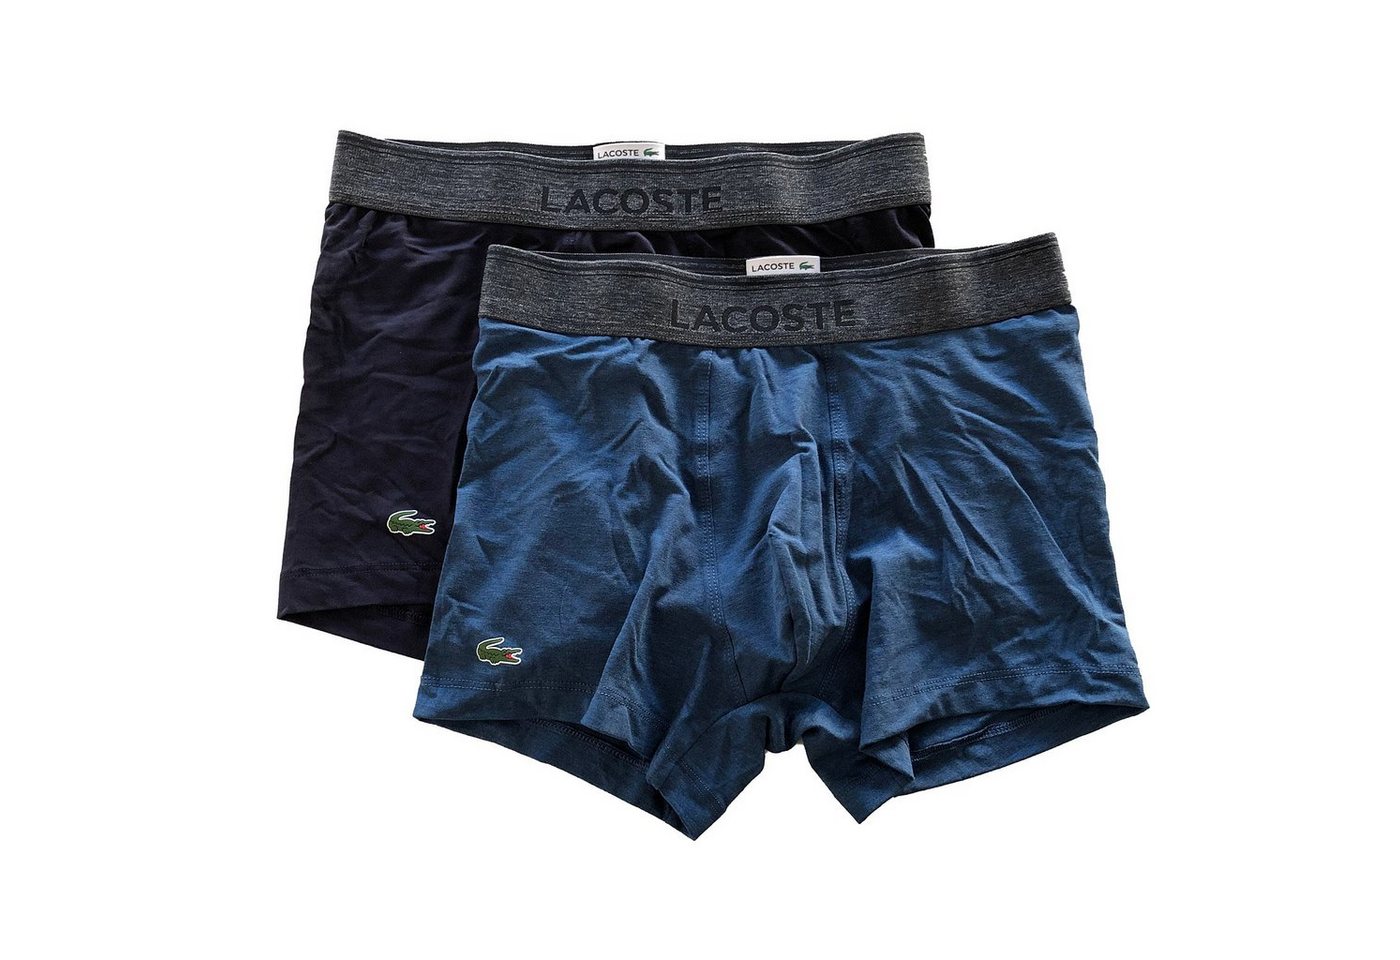 Lacoste Trunk Cotton Modal Serie (Doppelpack, 2-St., 2er-Pack) Baumwolle Modal Unterhosen Shorts kurzes Bein im Doppelpack von Lacoste